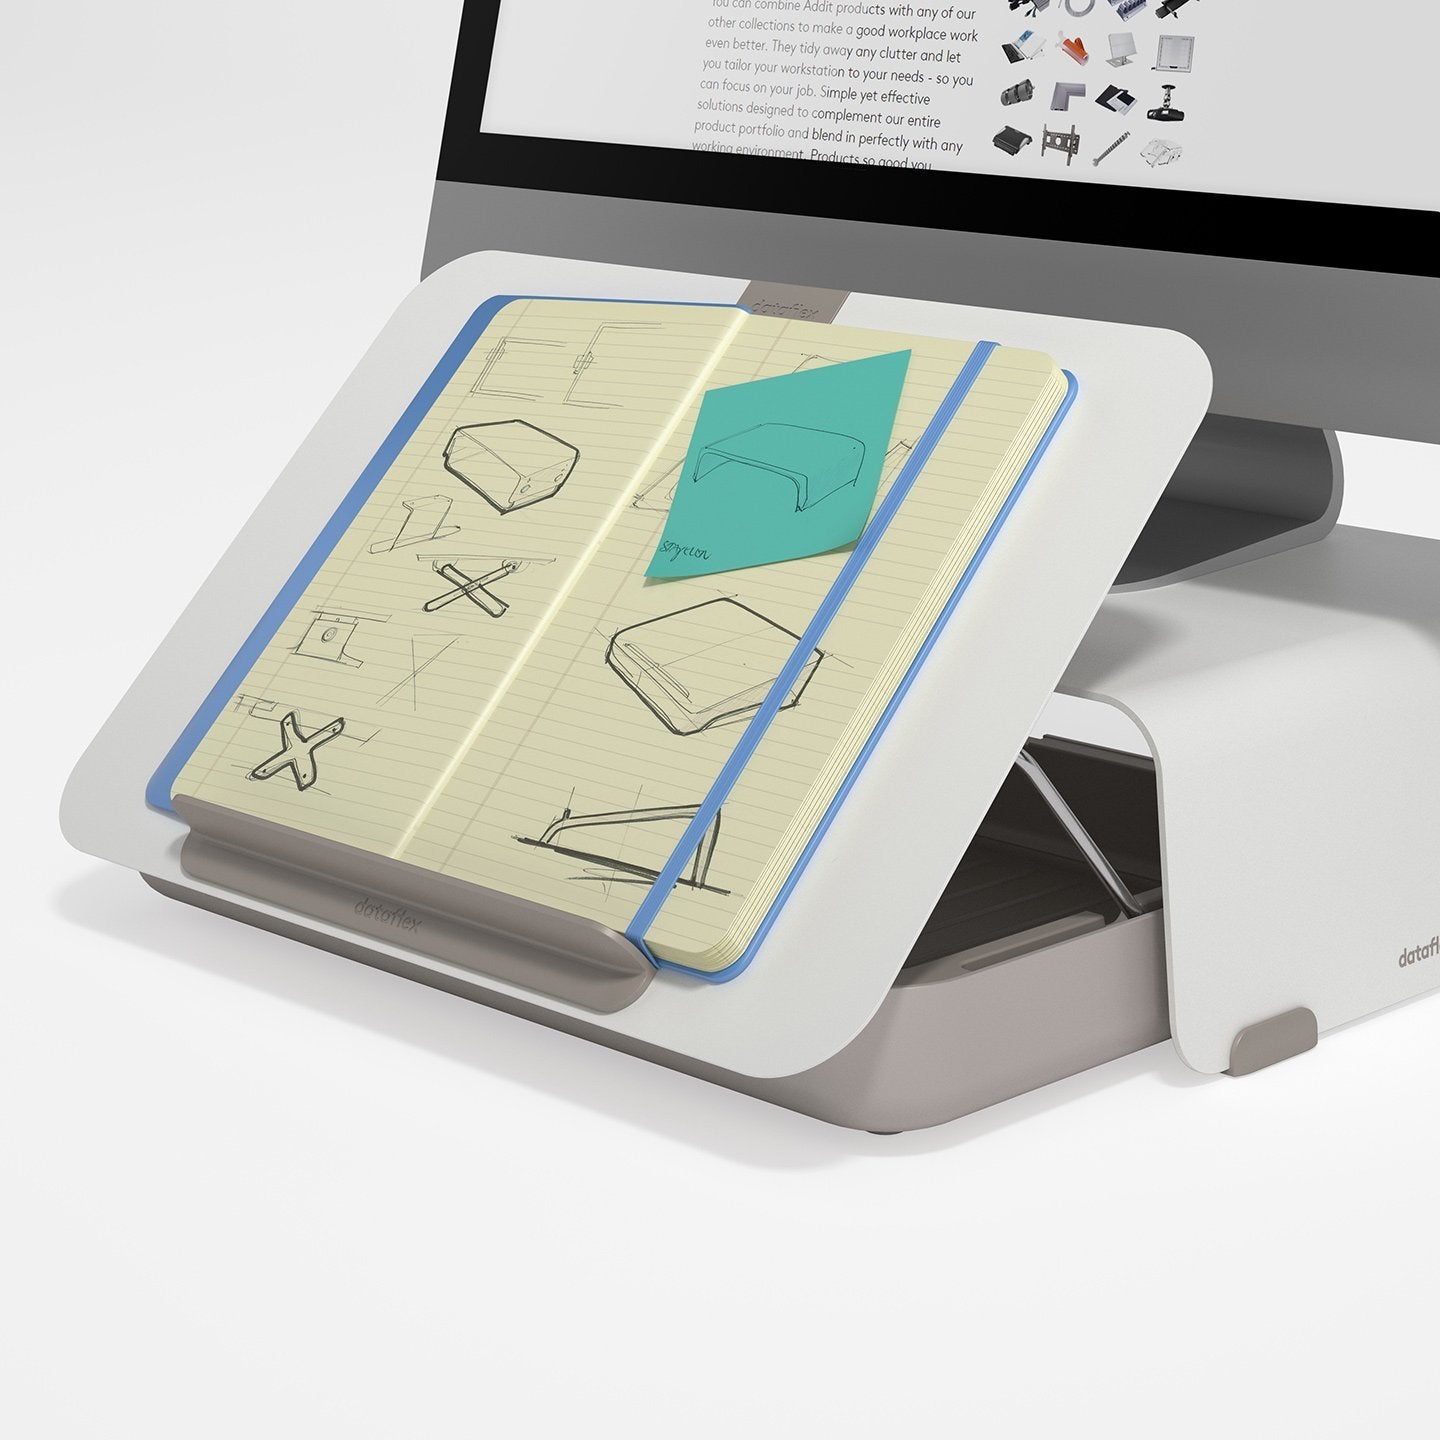 Witte ergonomische toolbox met geplaats notitieboek uit de Addit Bento® collectie van Dataflex